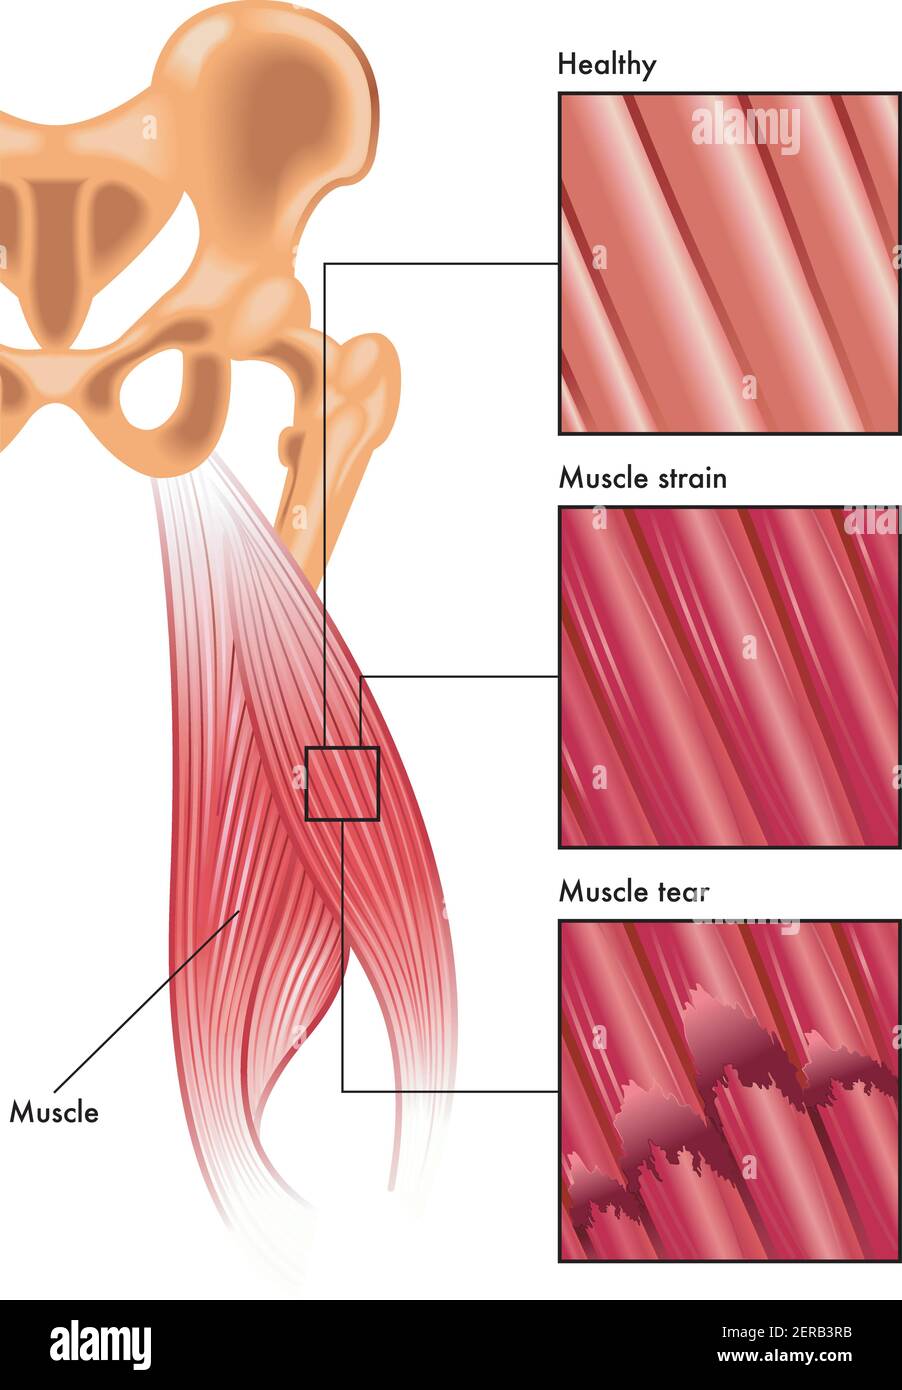 L'illustrazione medica mostra le fibre muscolari sane rispetto allo sforzo muscolare e alla lacerazione muscolare. Illustrazione Vettoriale